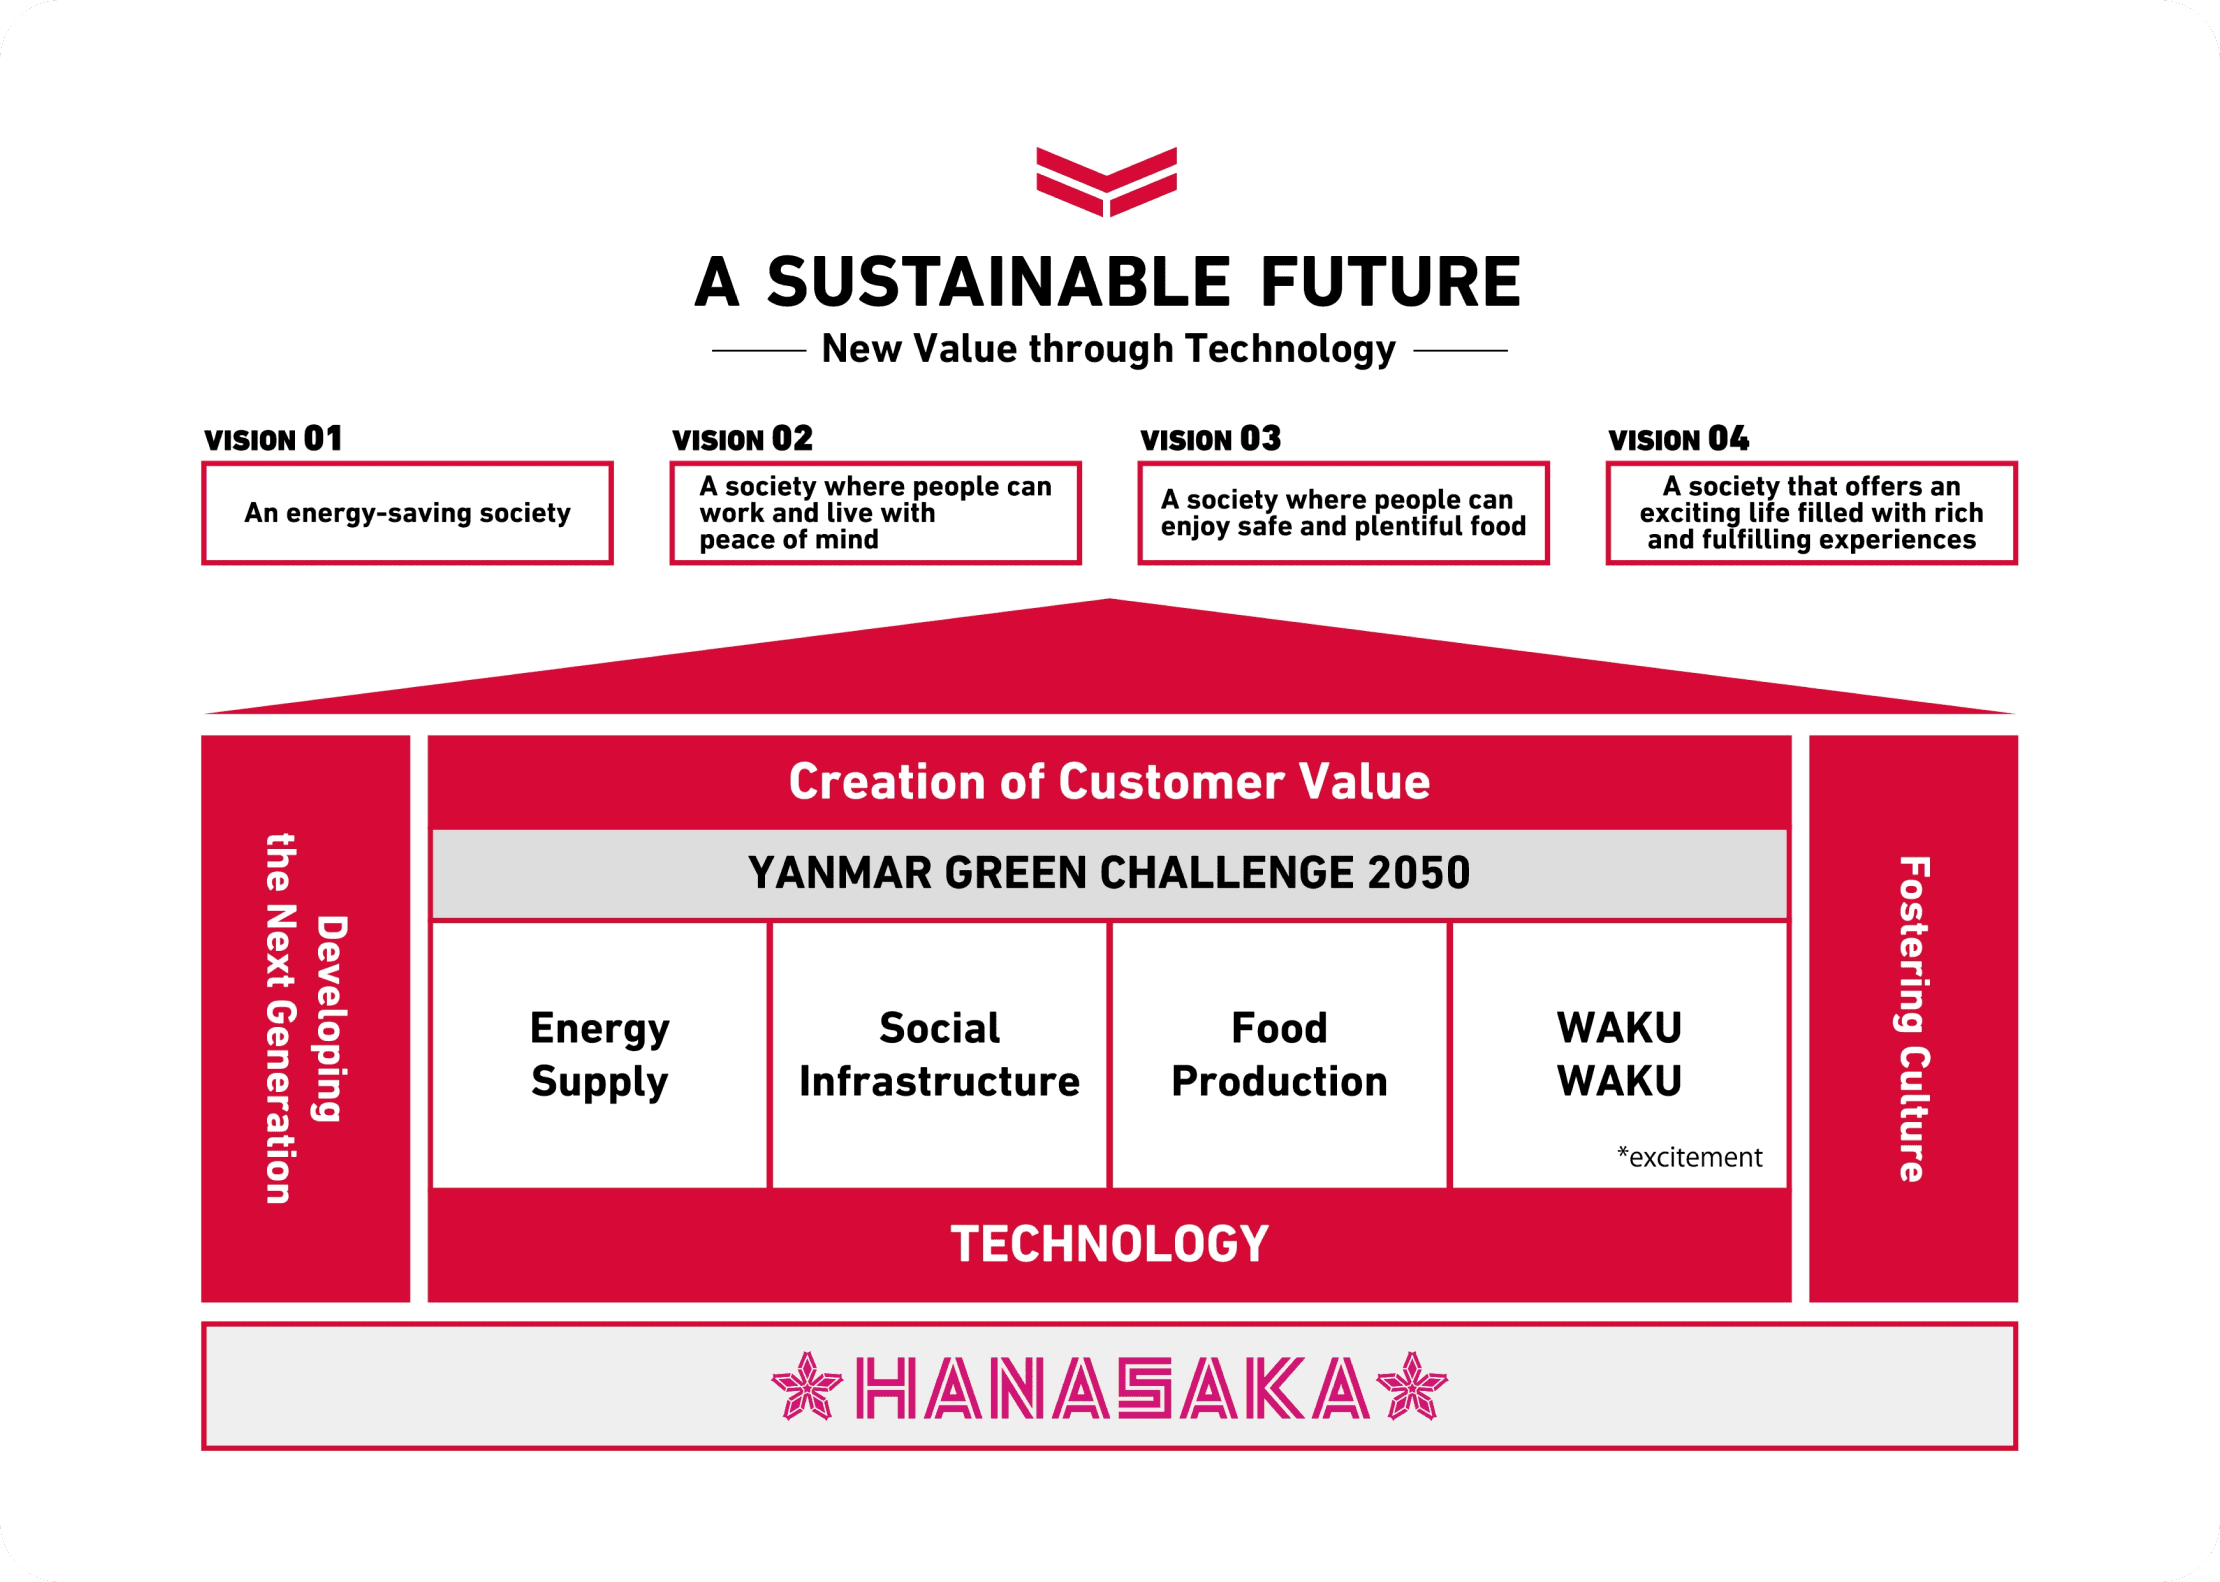 該圖顯示了在HANASAKA的基礎上依序建立的每一項業務活動、FUTURE VISION 和 A SUSTAINABLE FUTURE 中的四個社會。